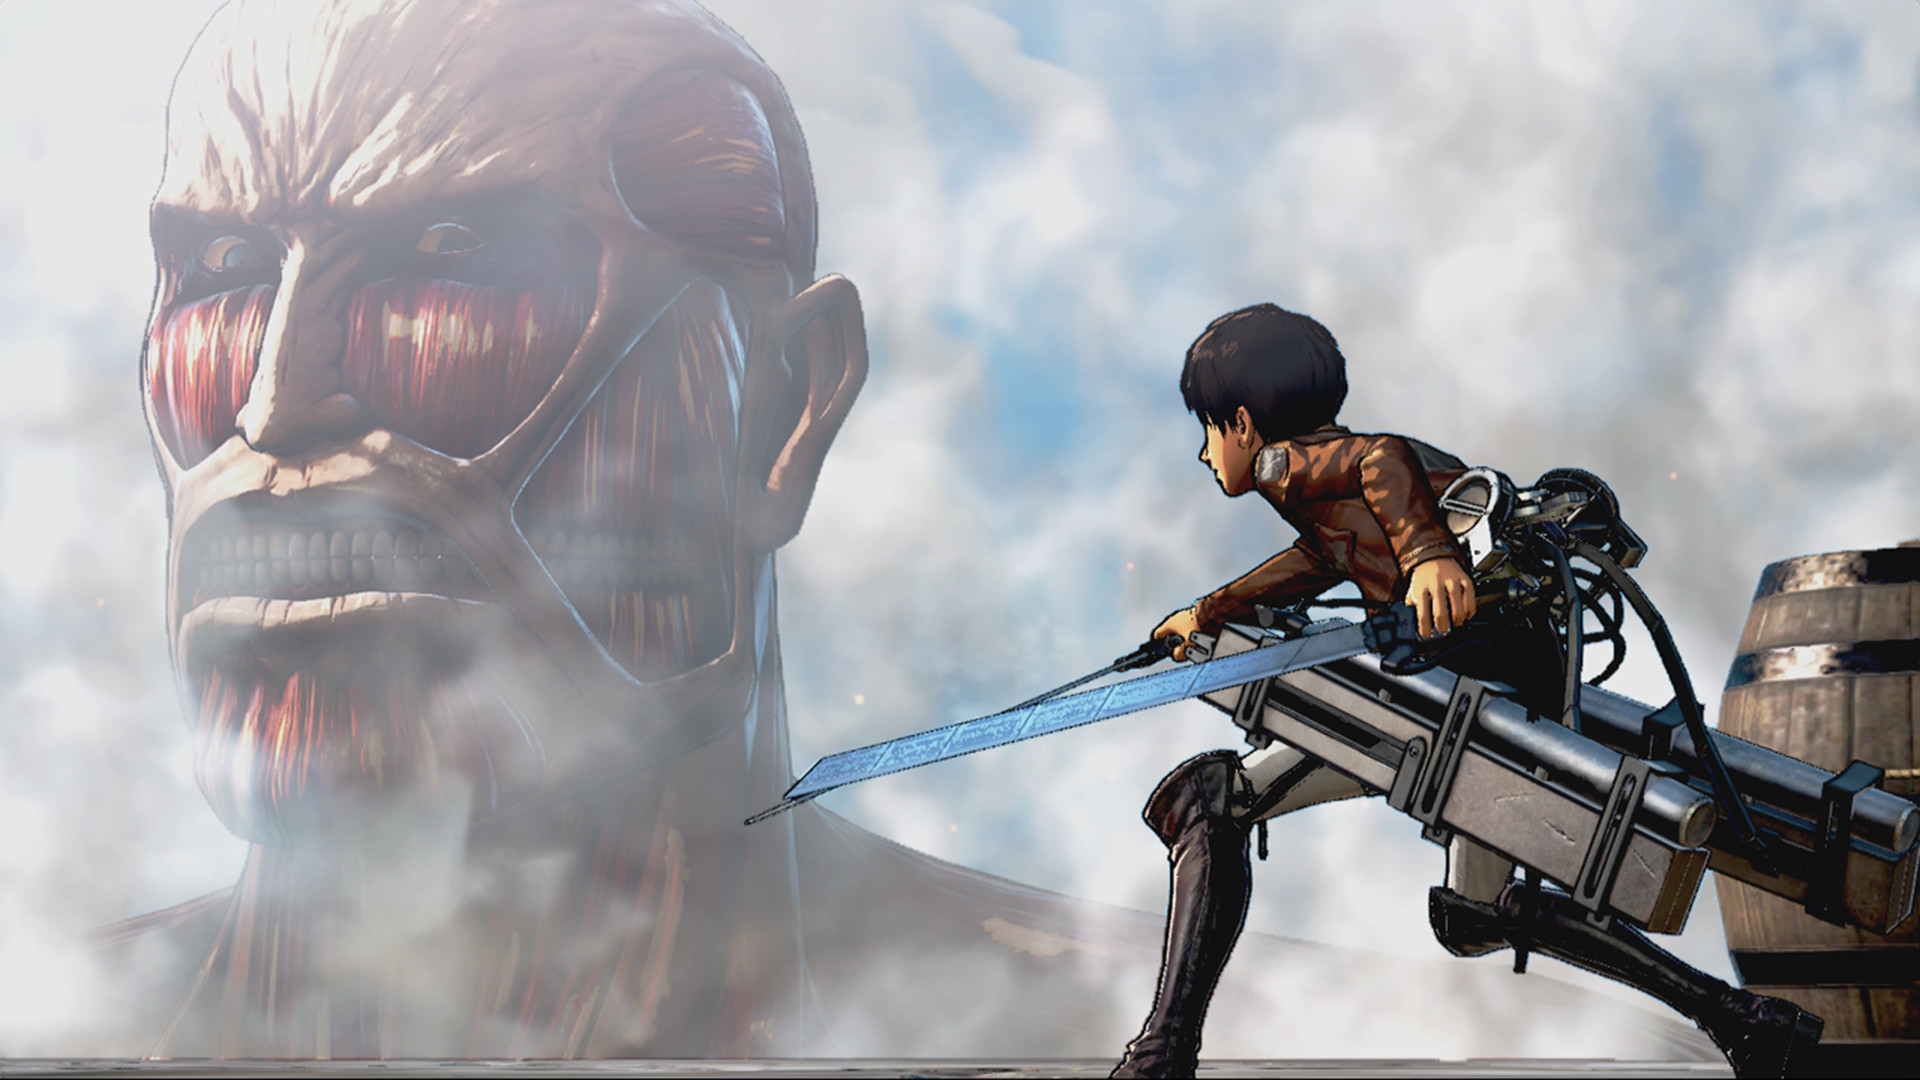 Beste Anime -Spiele: Angriff auf Titan. Bild zeigt einen Titan, der jemanden ansieht und hungrig aussieht